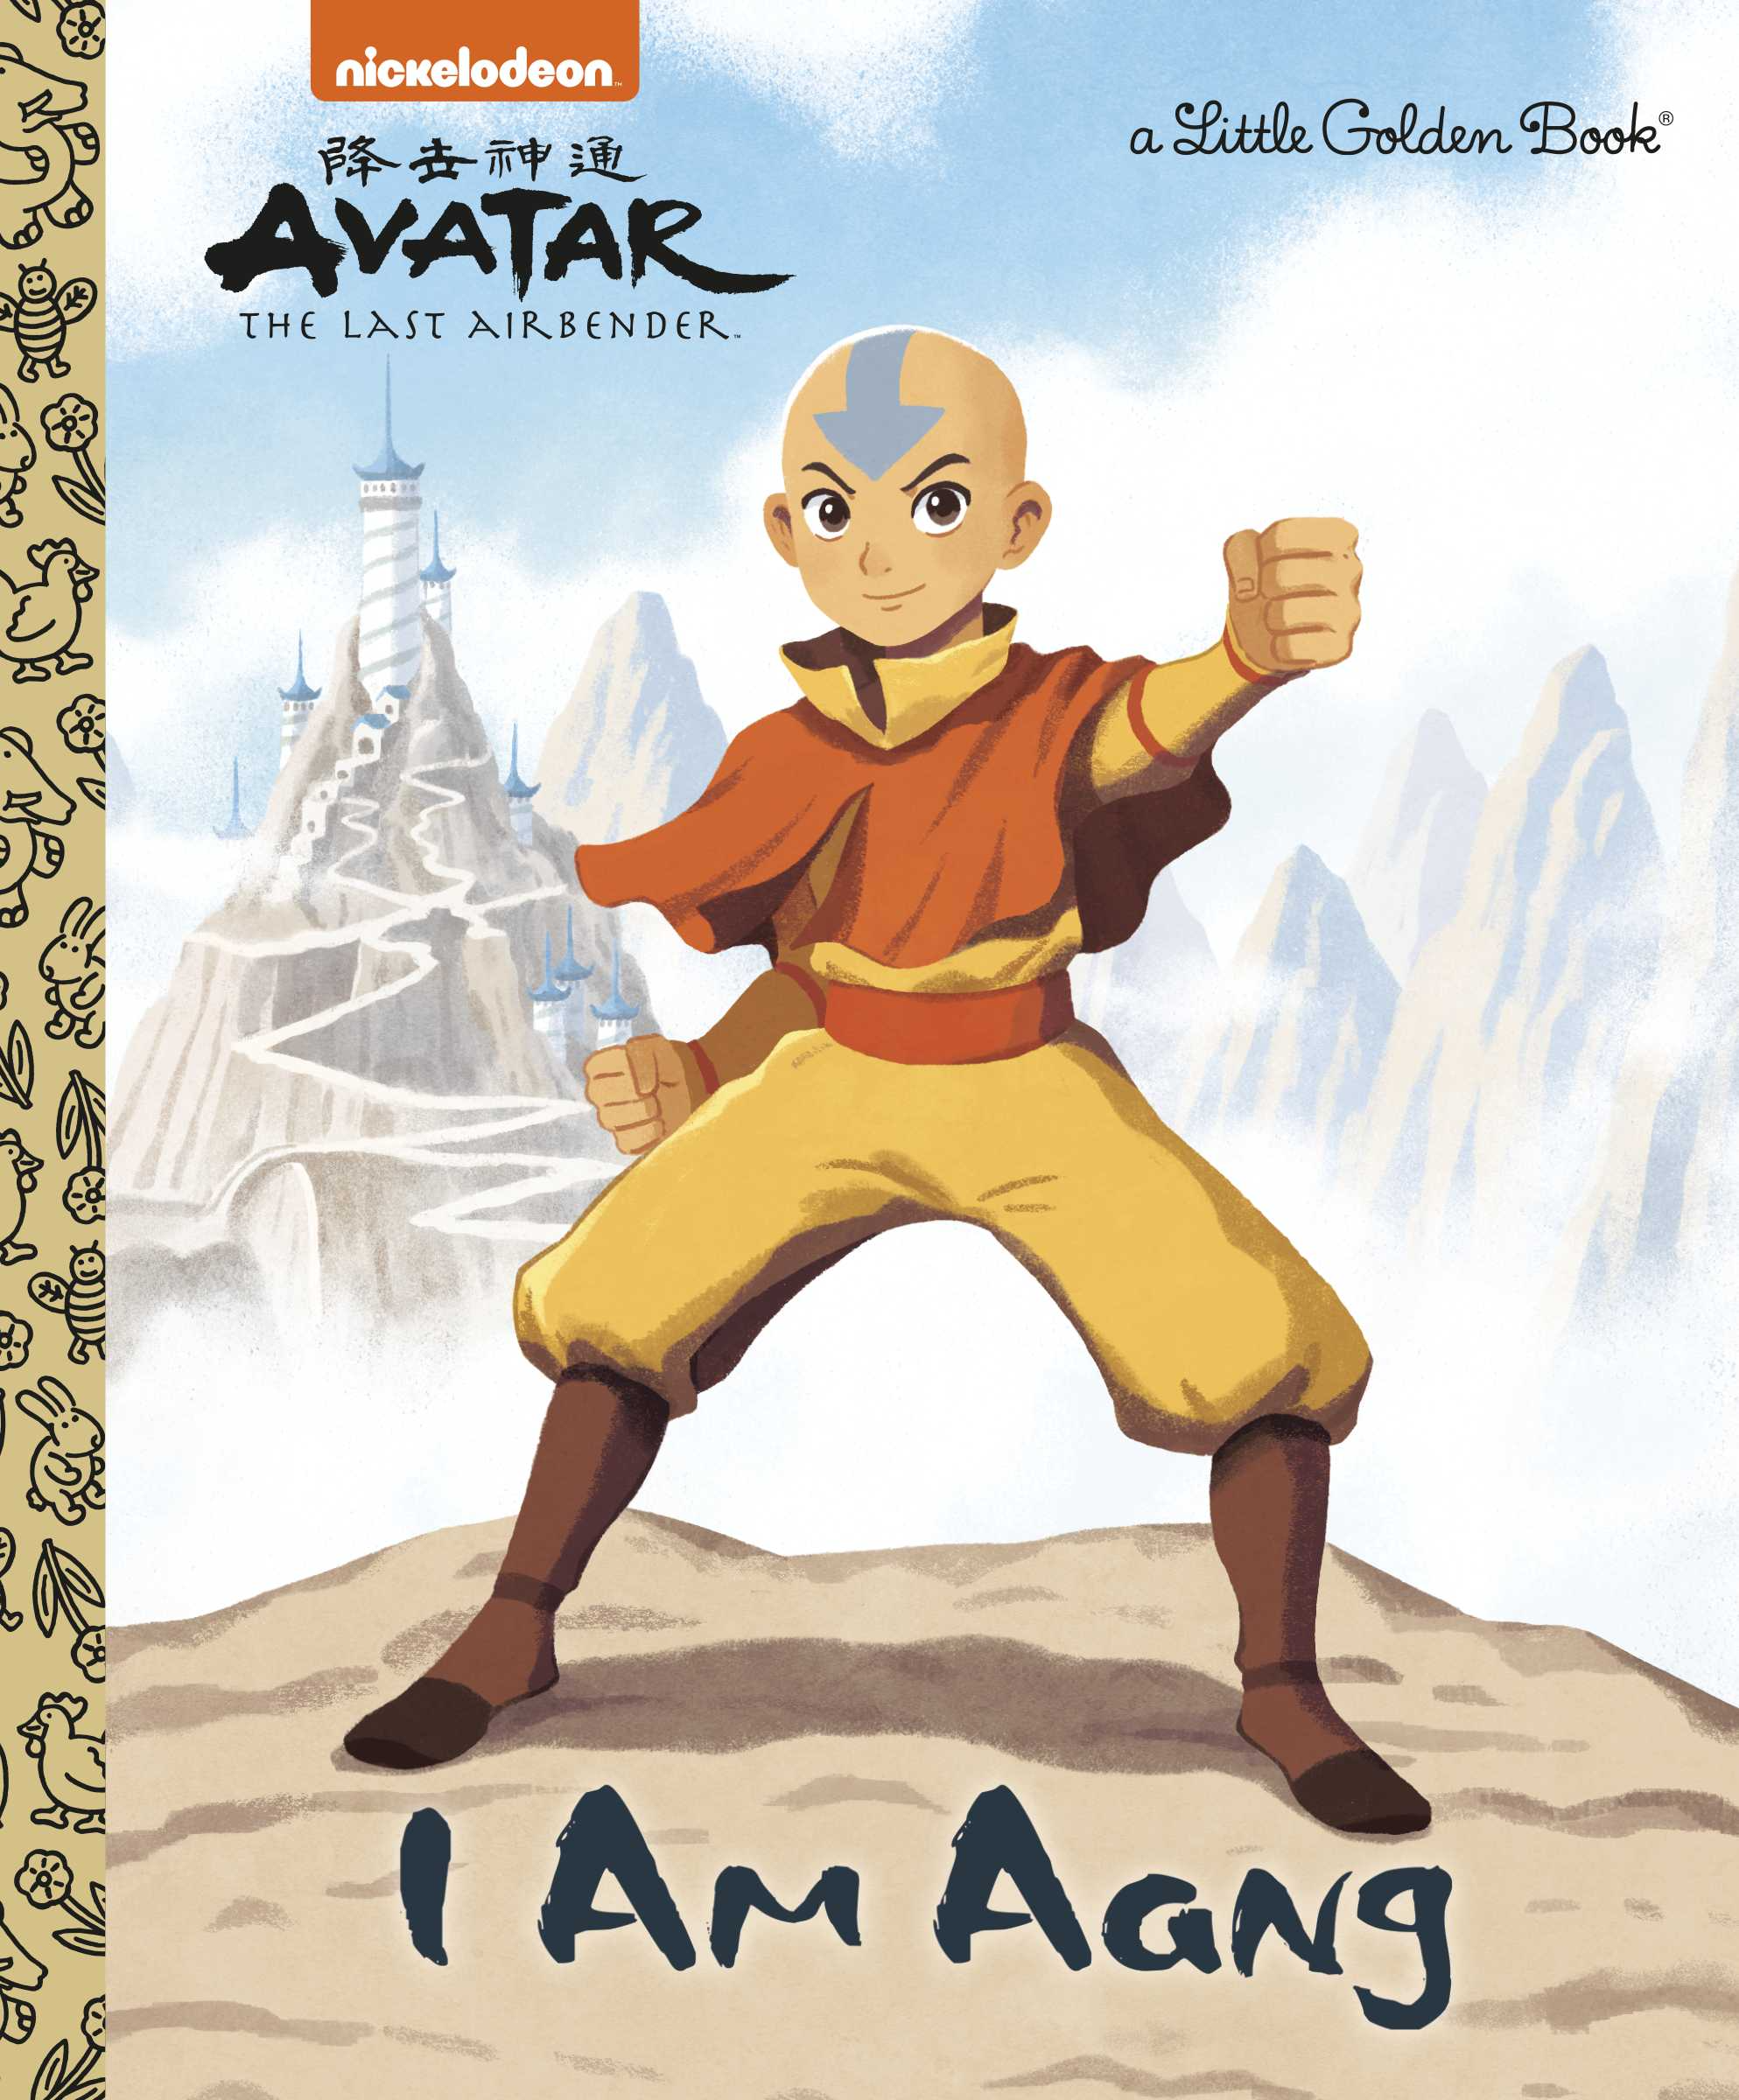 Tiểu sư phụ Aang là một trong những nhân vật đầy huyền thoại trong thế giới của Avatar. Nếu bạn là fan của bộ phim, hãy cùng xem hình ảnh của Tiểu sư phụ Aang để được đắm chìm trong thế giới phép thuật, phiêu lưu và tình bạn.